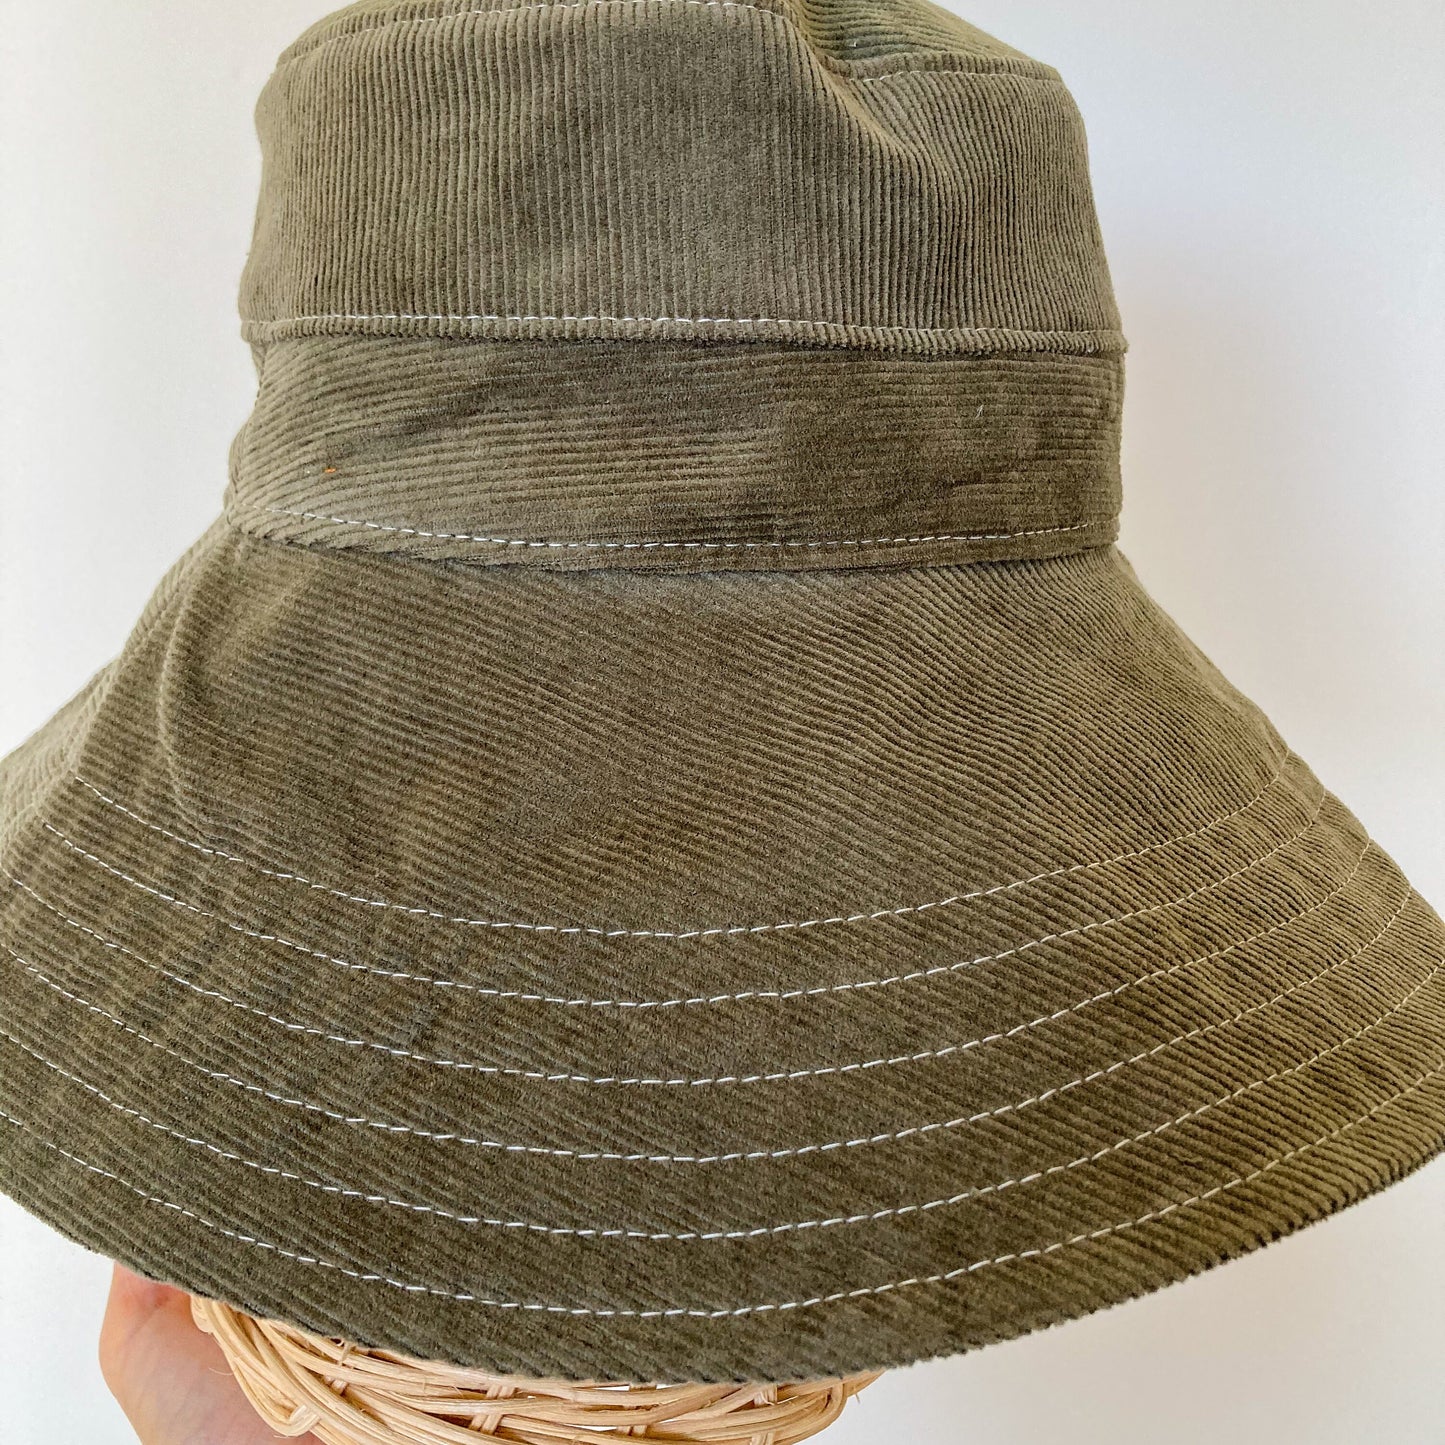 Summer Bucket Hat, Olive Green Hat, Corduroy Hat, Wide Brim Sun Hat, Beach Bucket Hat, Cotton Summer Hat, Green Bucket Hat, Boho Sun Hat